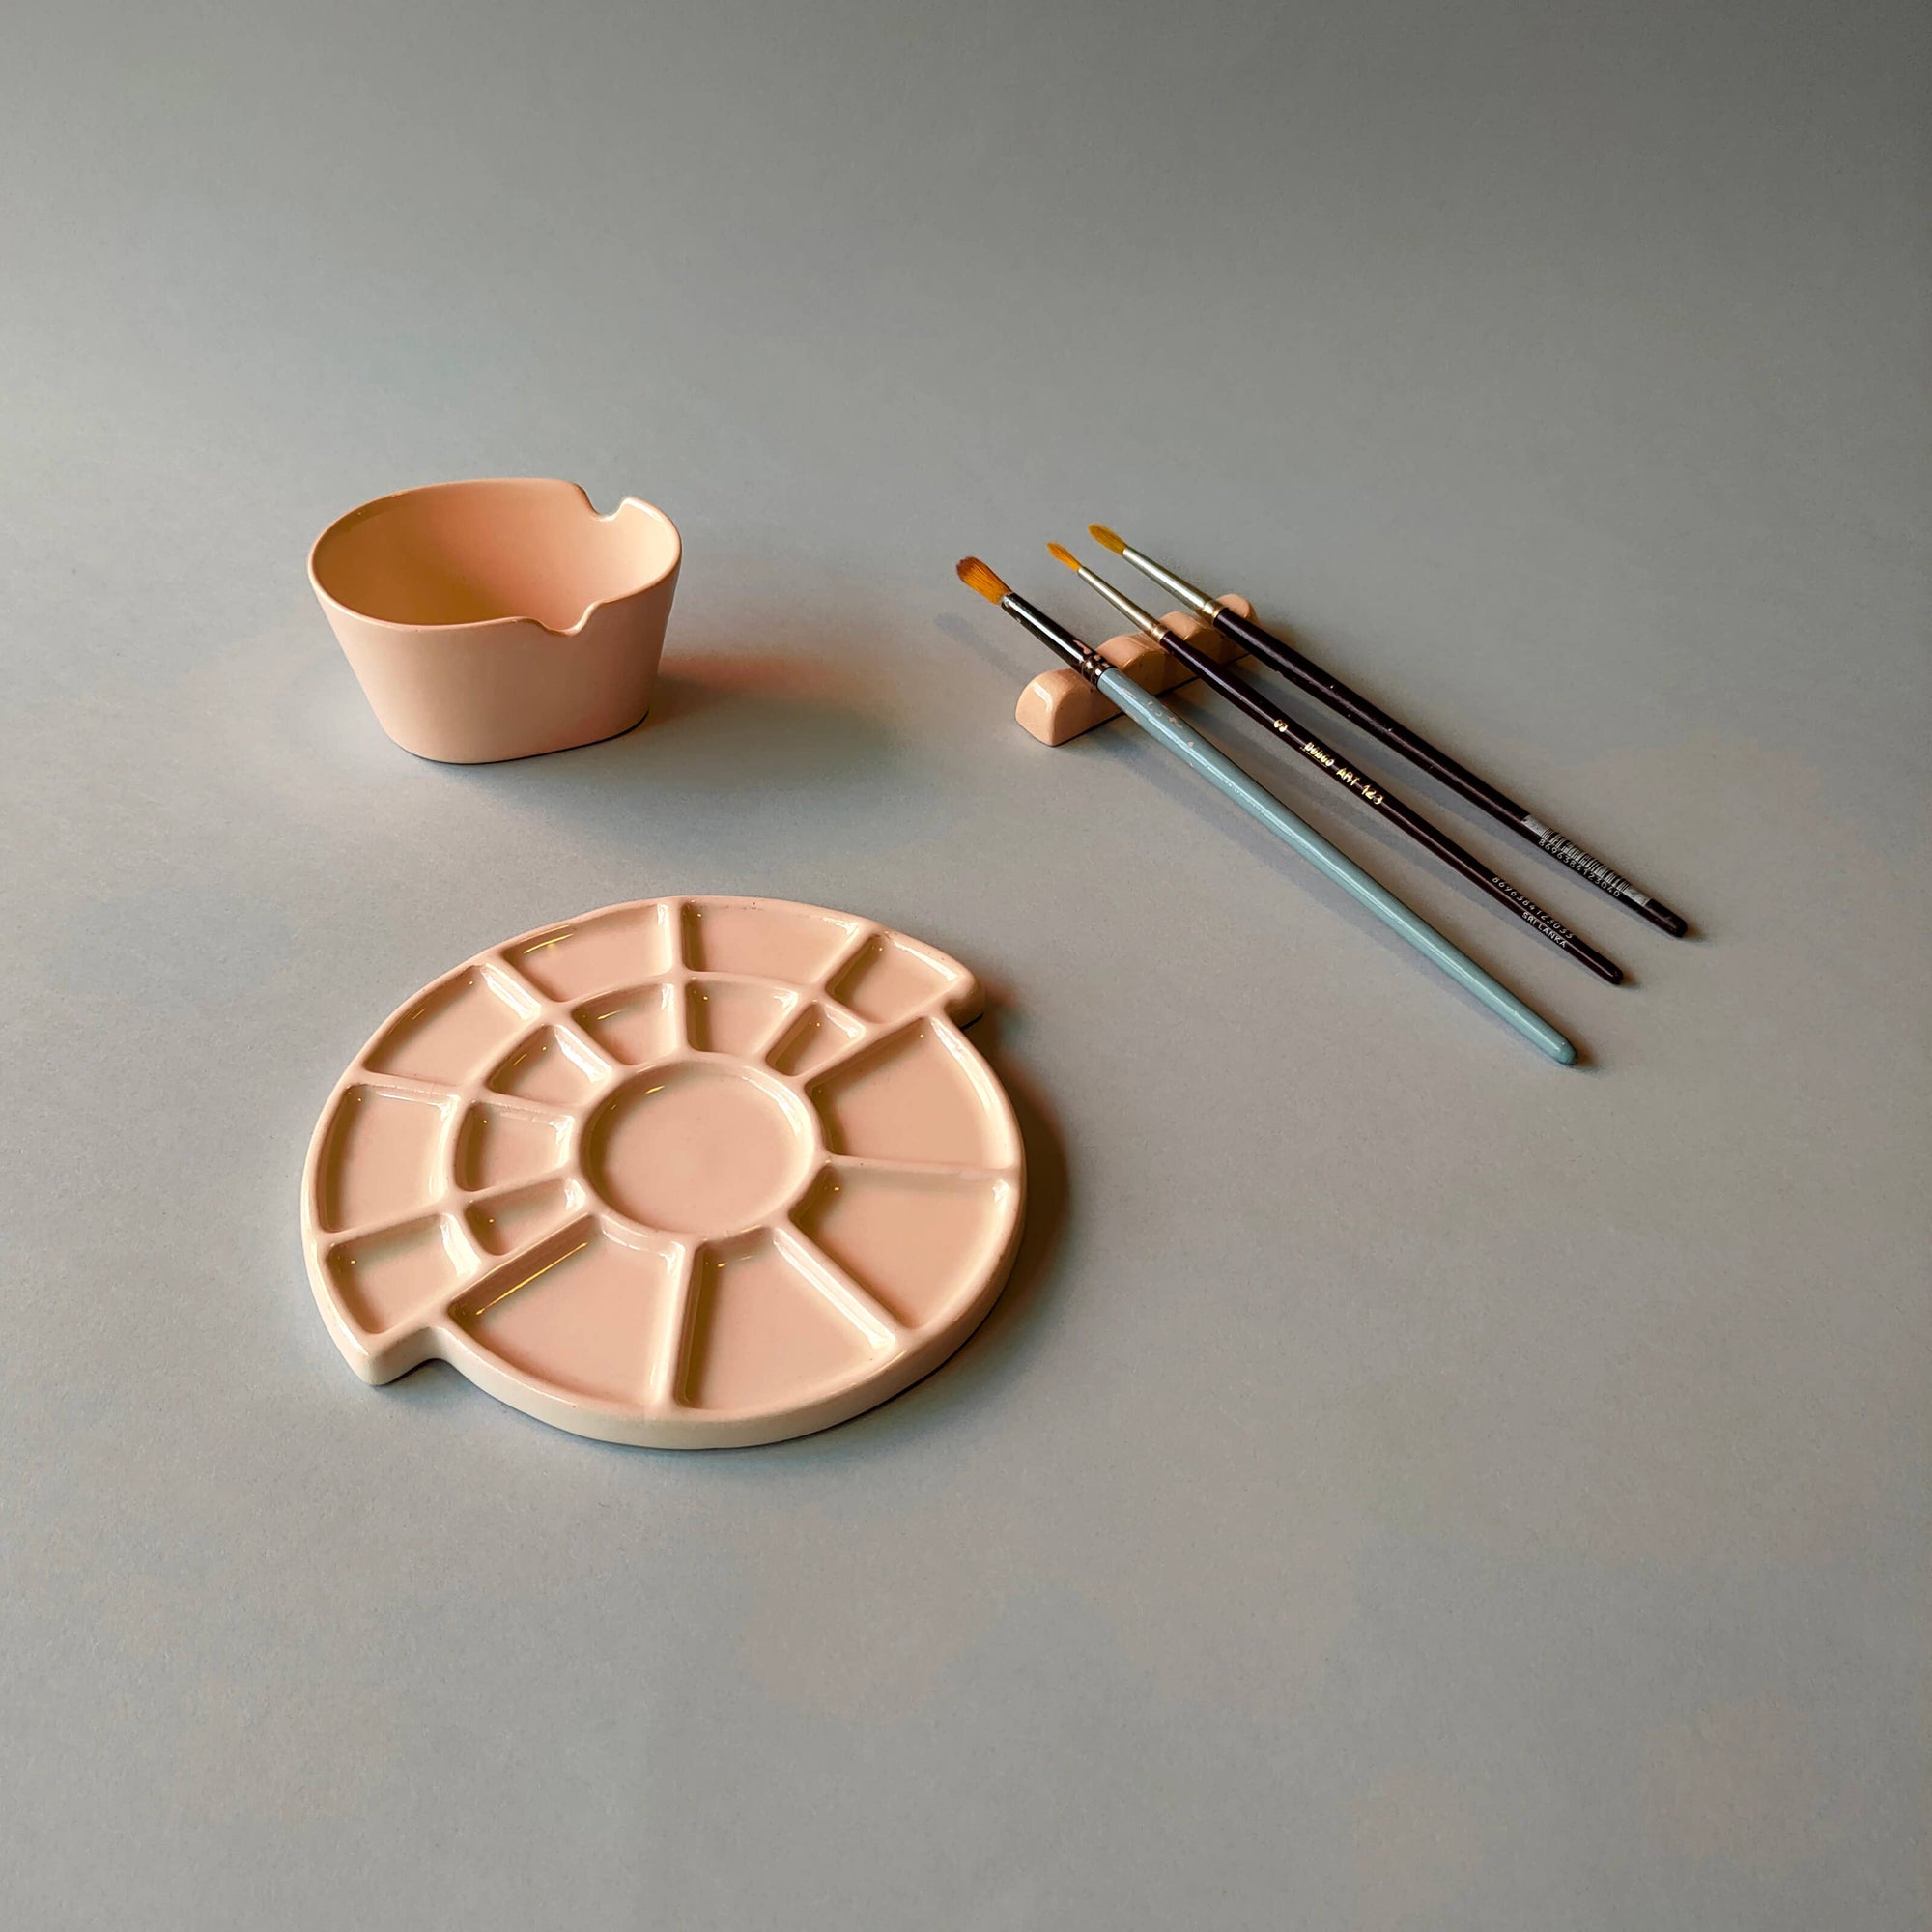 Ceramic Painting Set